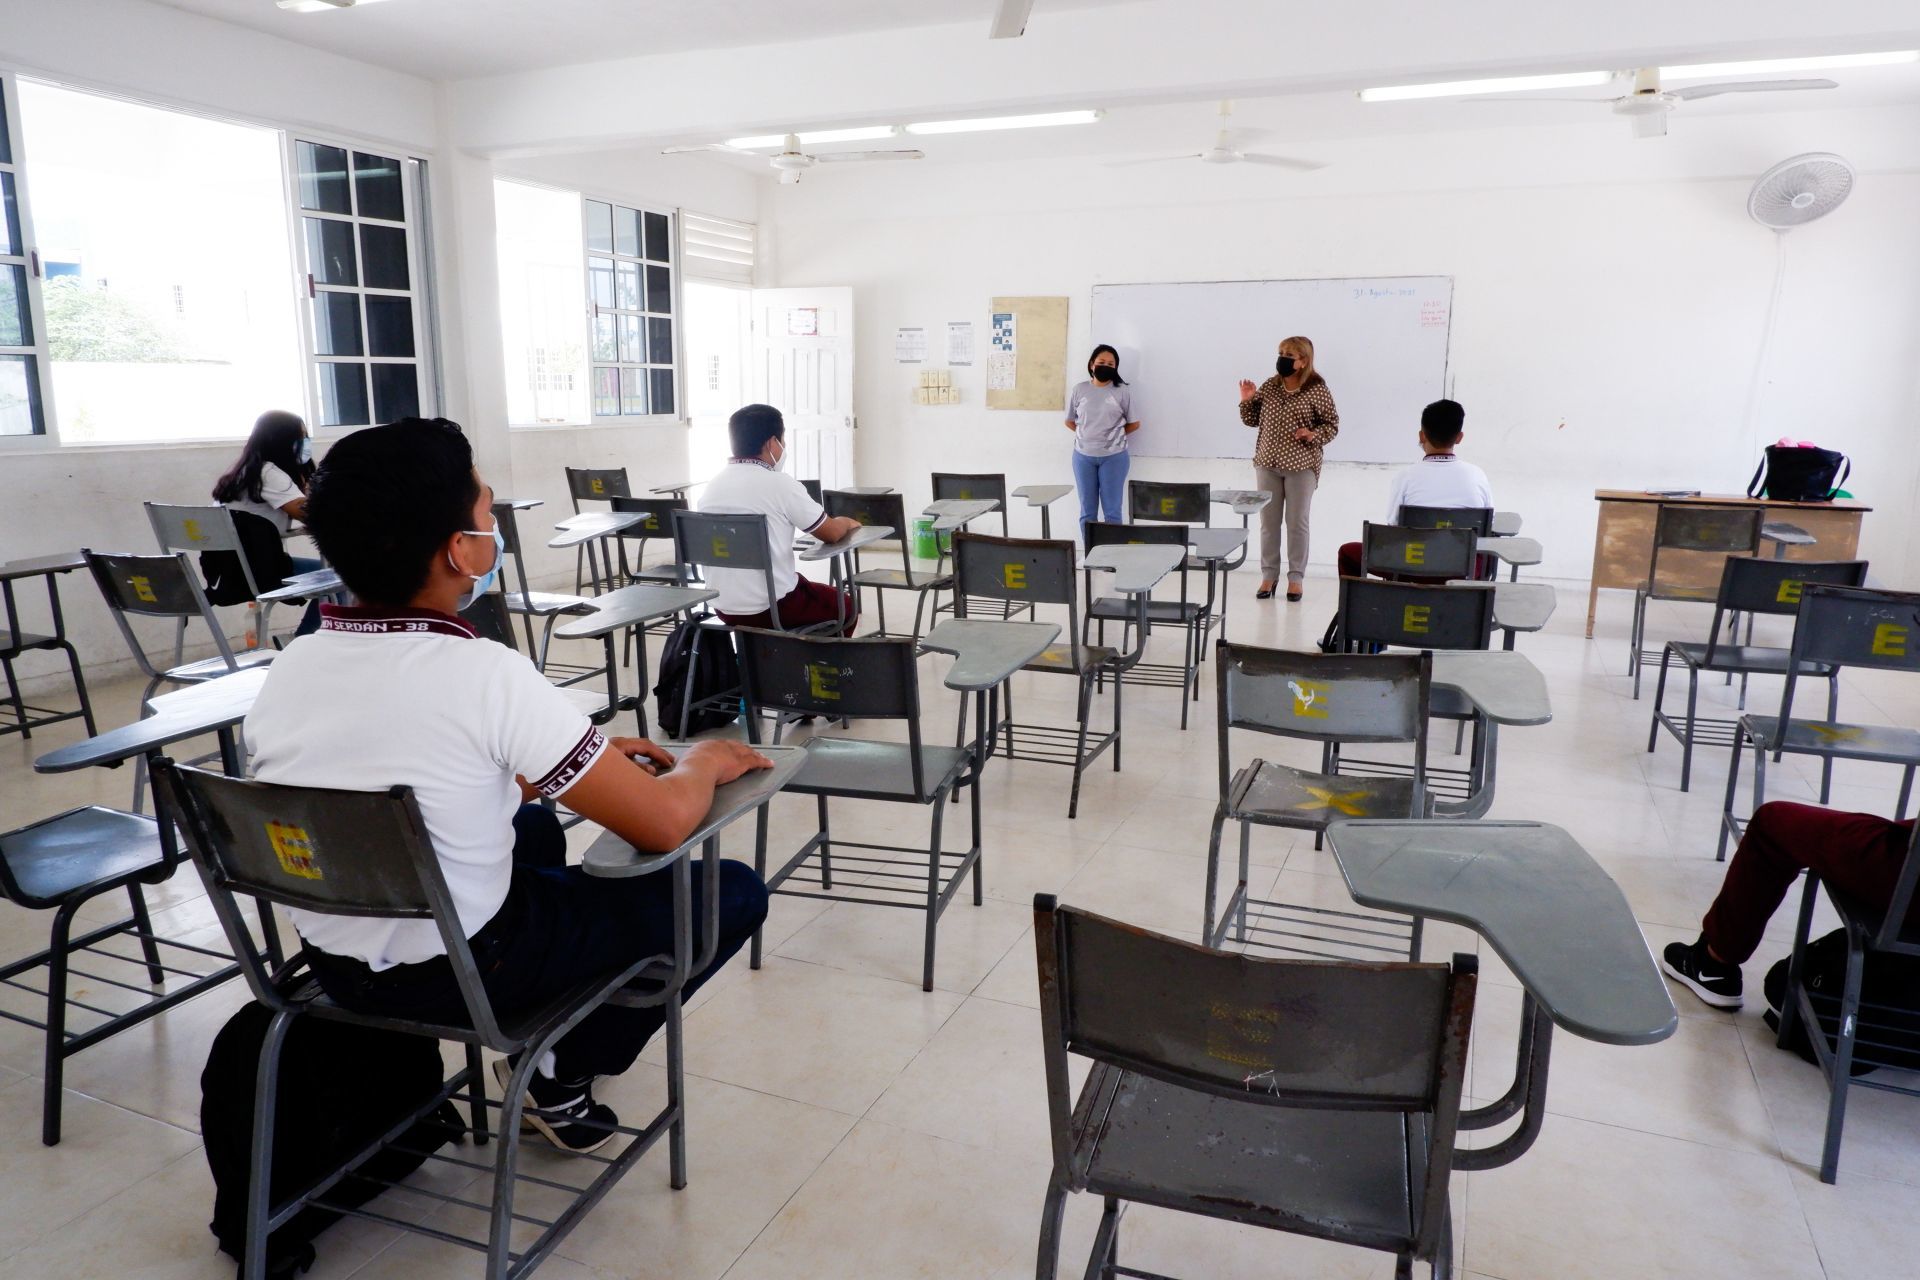 Se veía venir: 58 niños se contagian de COVID-19 en escuelas de Tabasco 